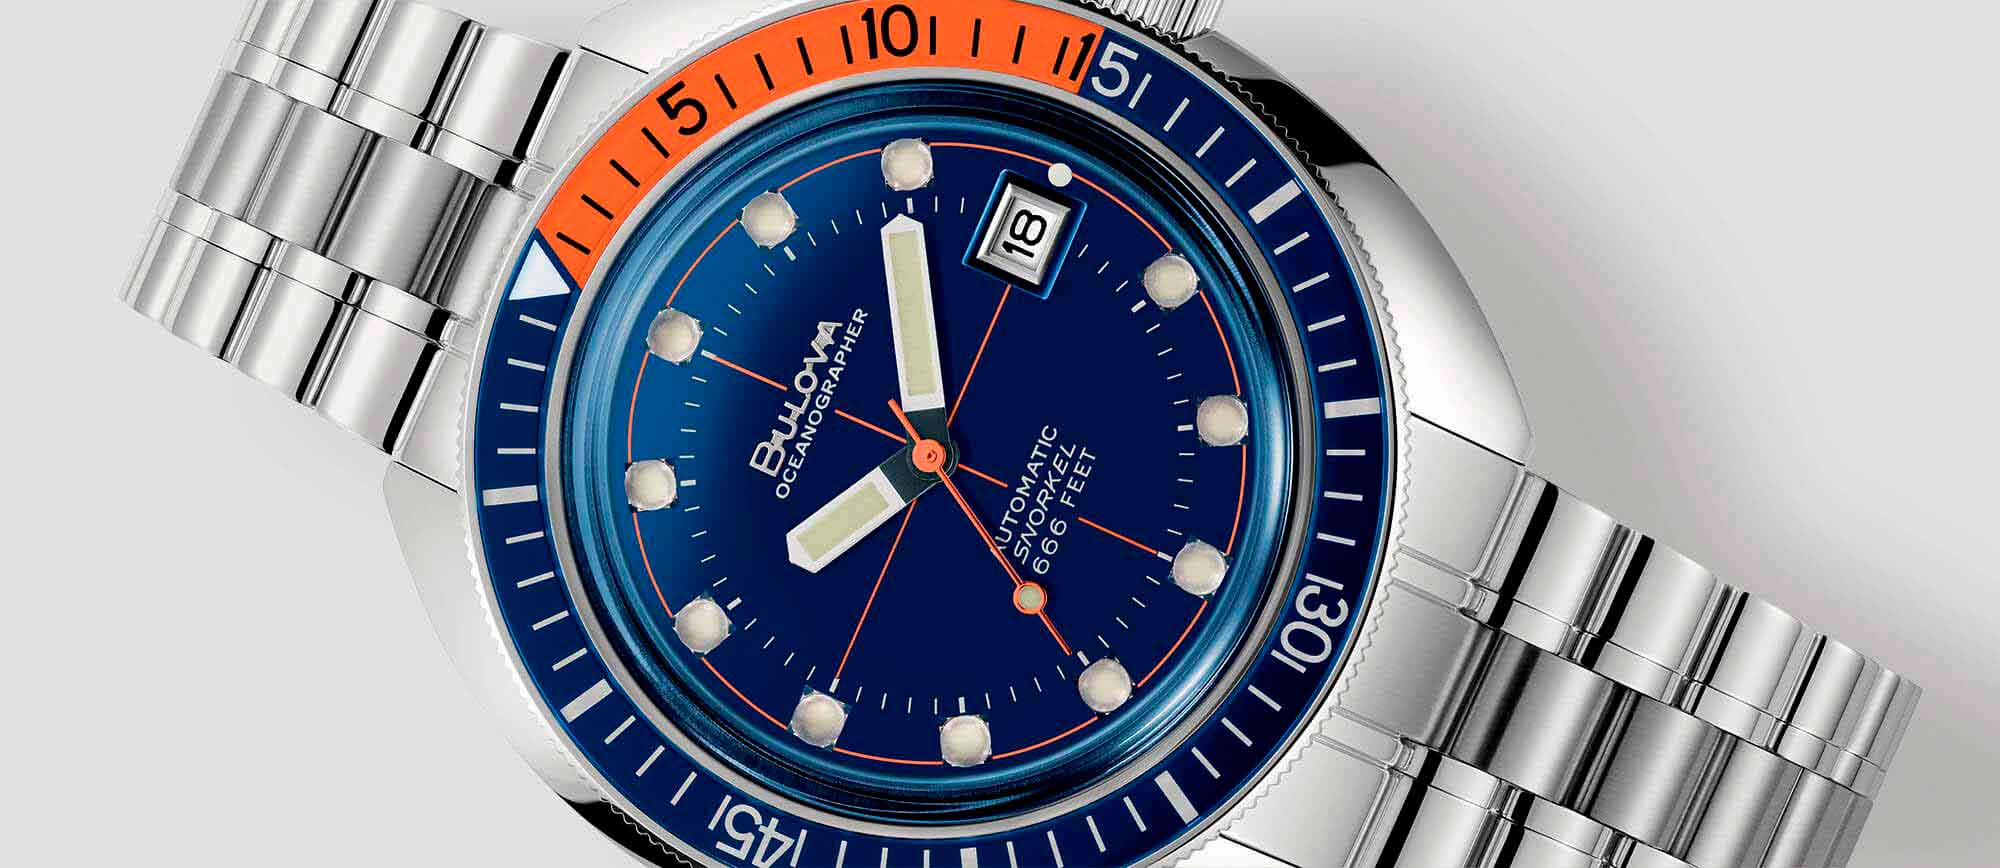 Relógio metálico com mostrador azul, com detalhes em laranja, da coleção Oceanographer "Devil Diver" de relógios Bulova, uma homenagem ao mergulho de profundidade. Relógios resistentes à água.